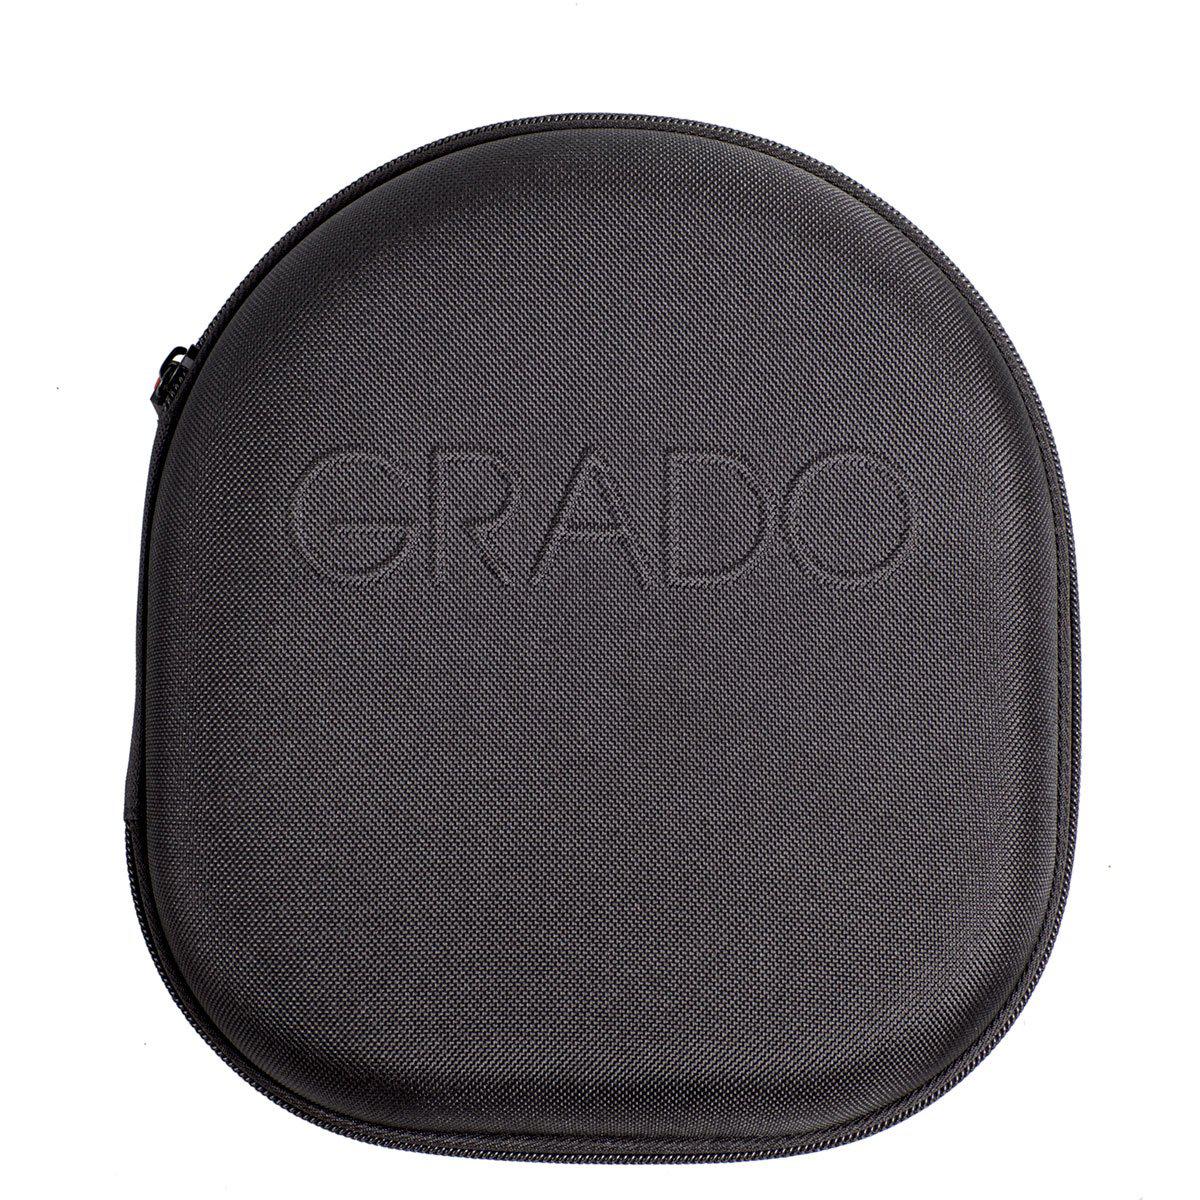 Medium Hard-Shell Case for Grado Headphones